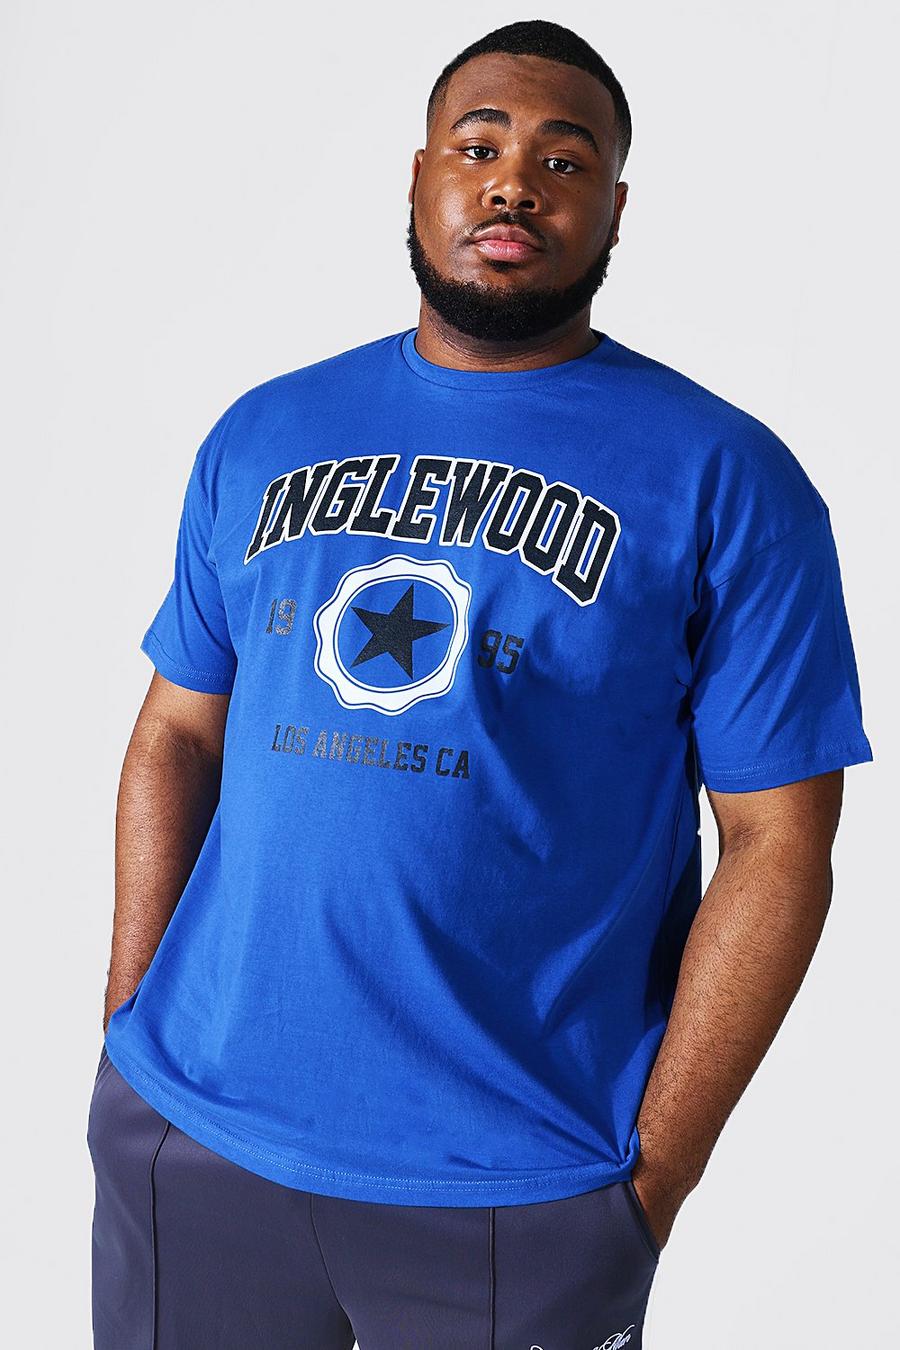 Camiseta Plus universitaria Inglewood, Blue azzurro image number 1